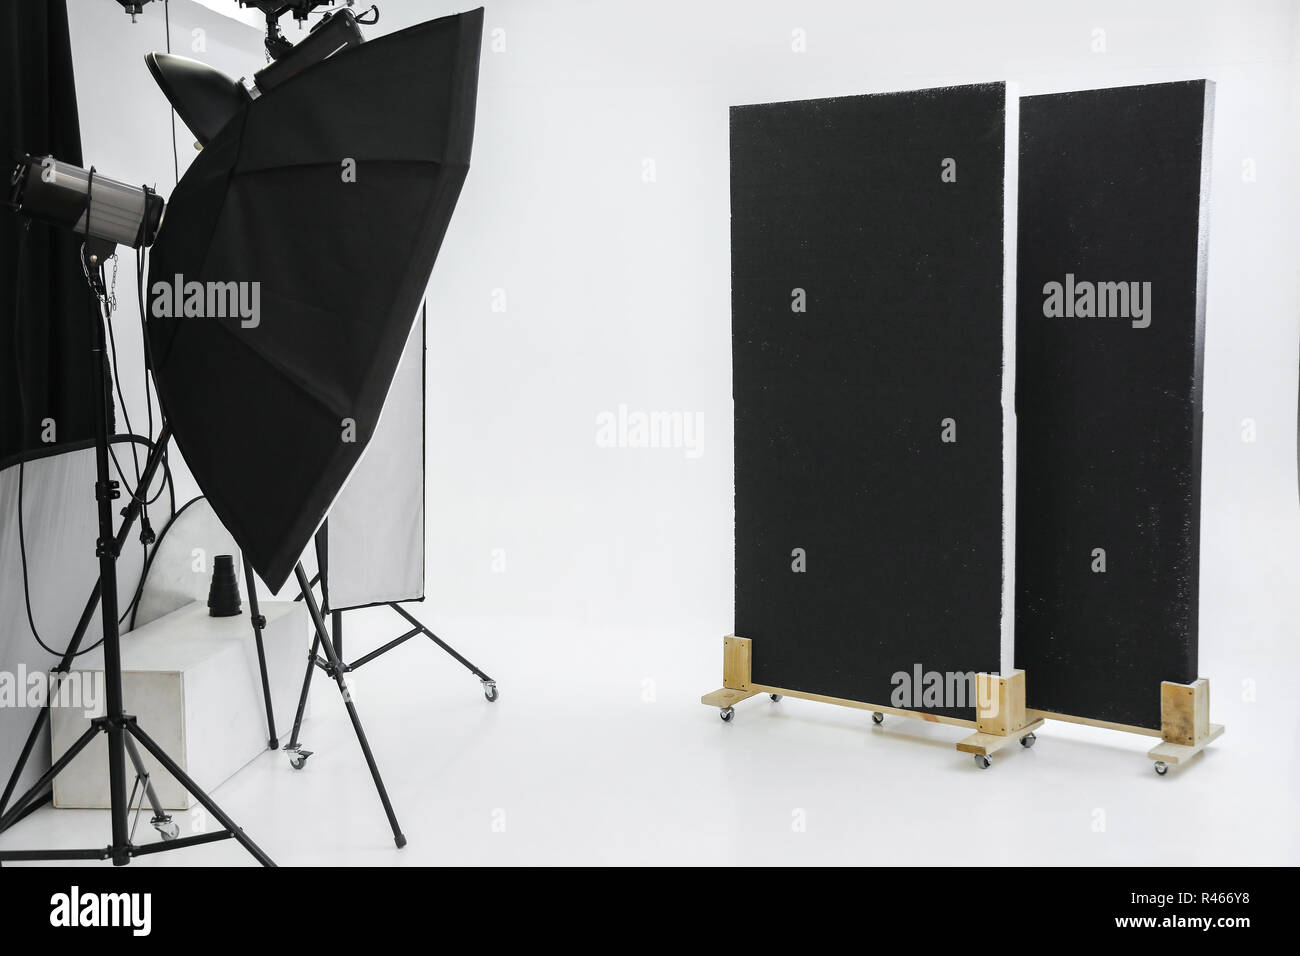 Vuota studio fotografico professionale con apparecchi di illuminazione Foto Stock